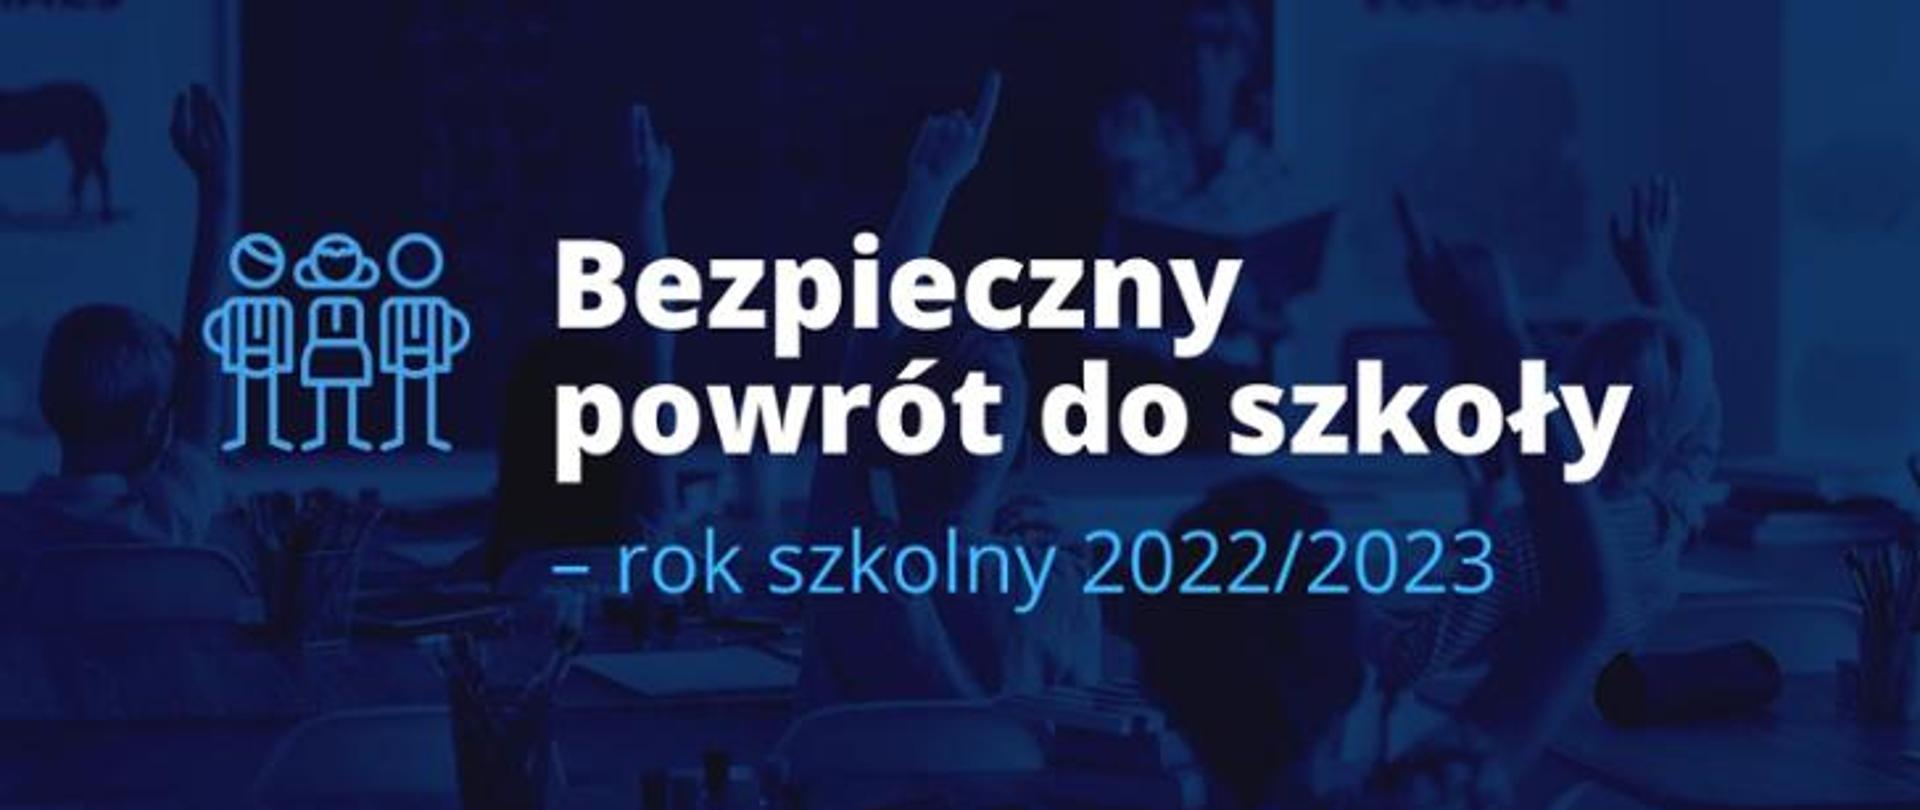 Na niebieskim tle napis: Bezpieczny powrót do szkoły - rok szkolny 2022/2023